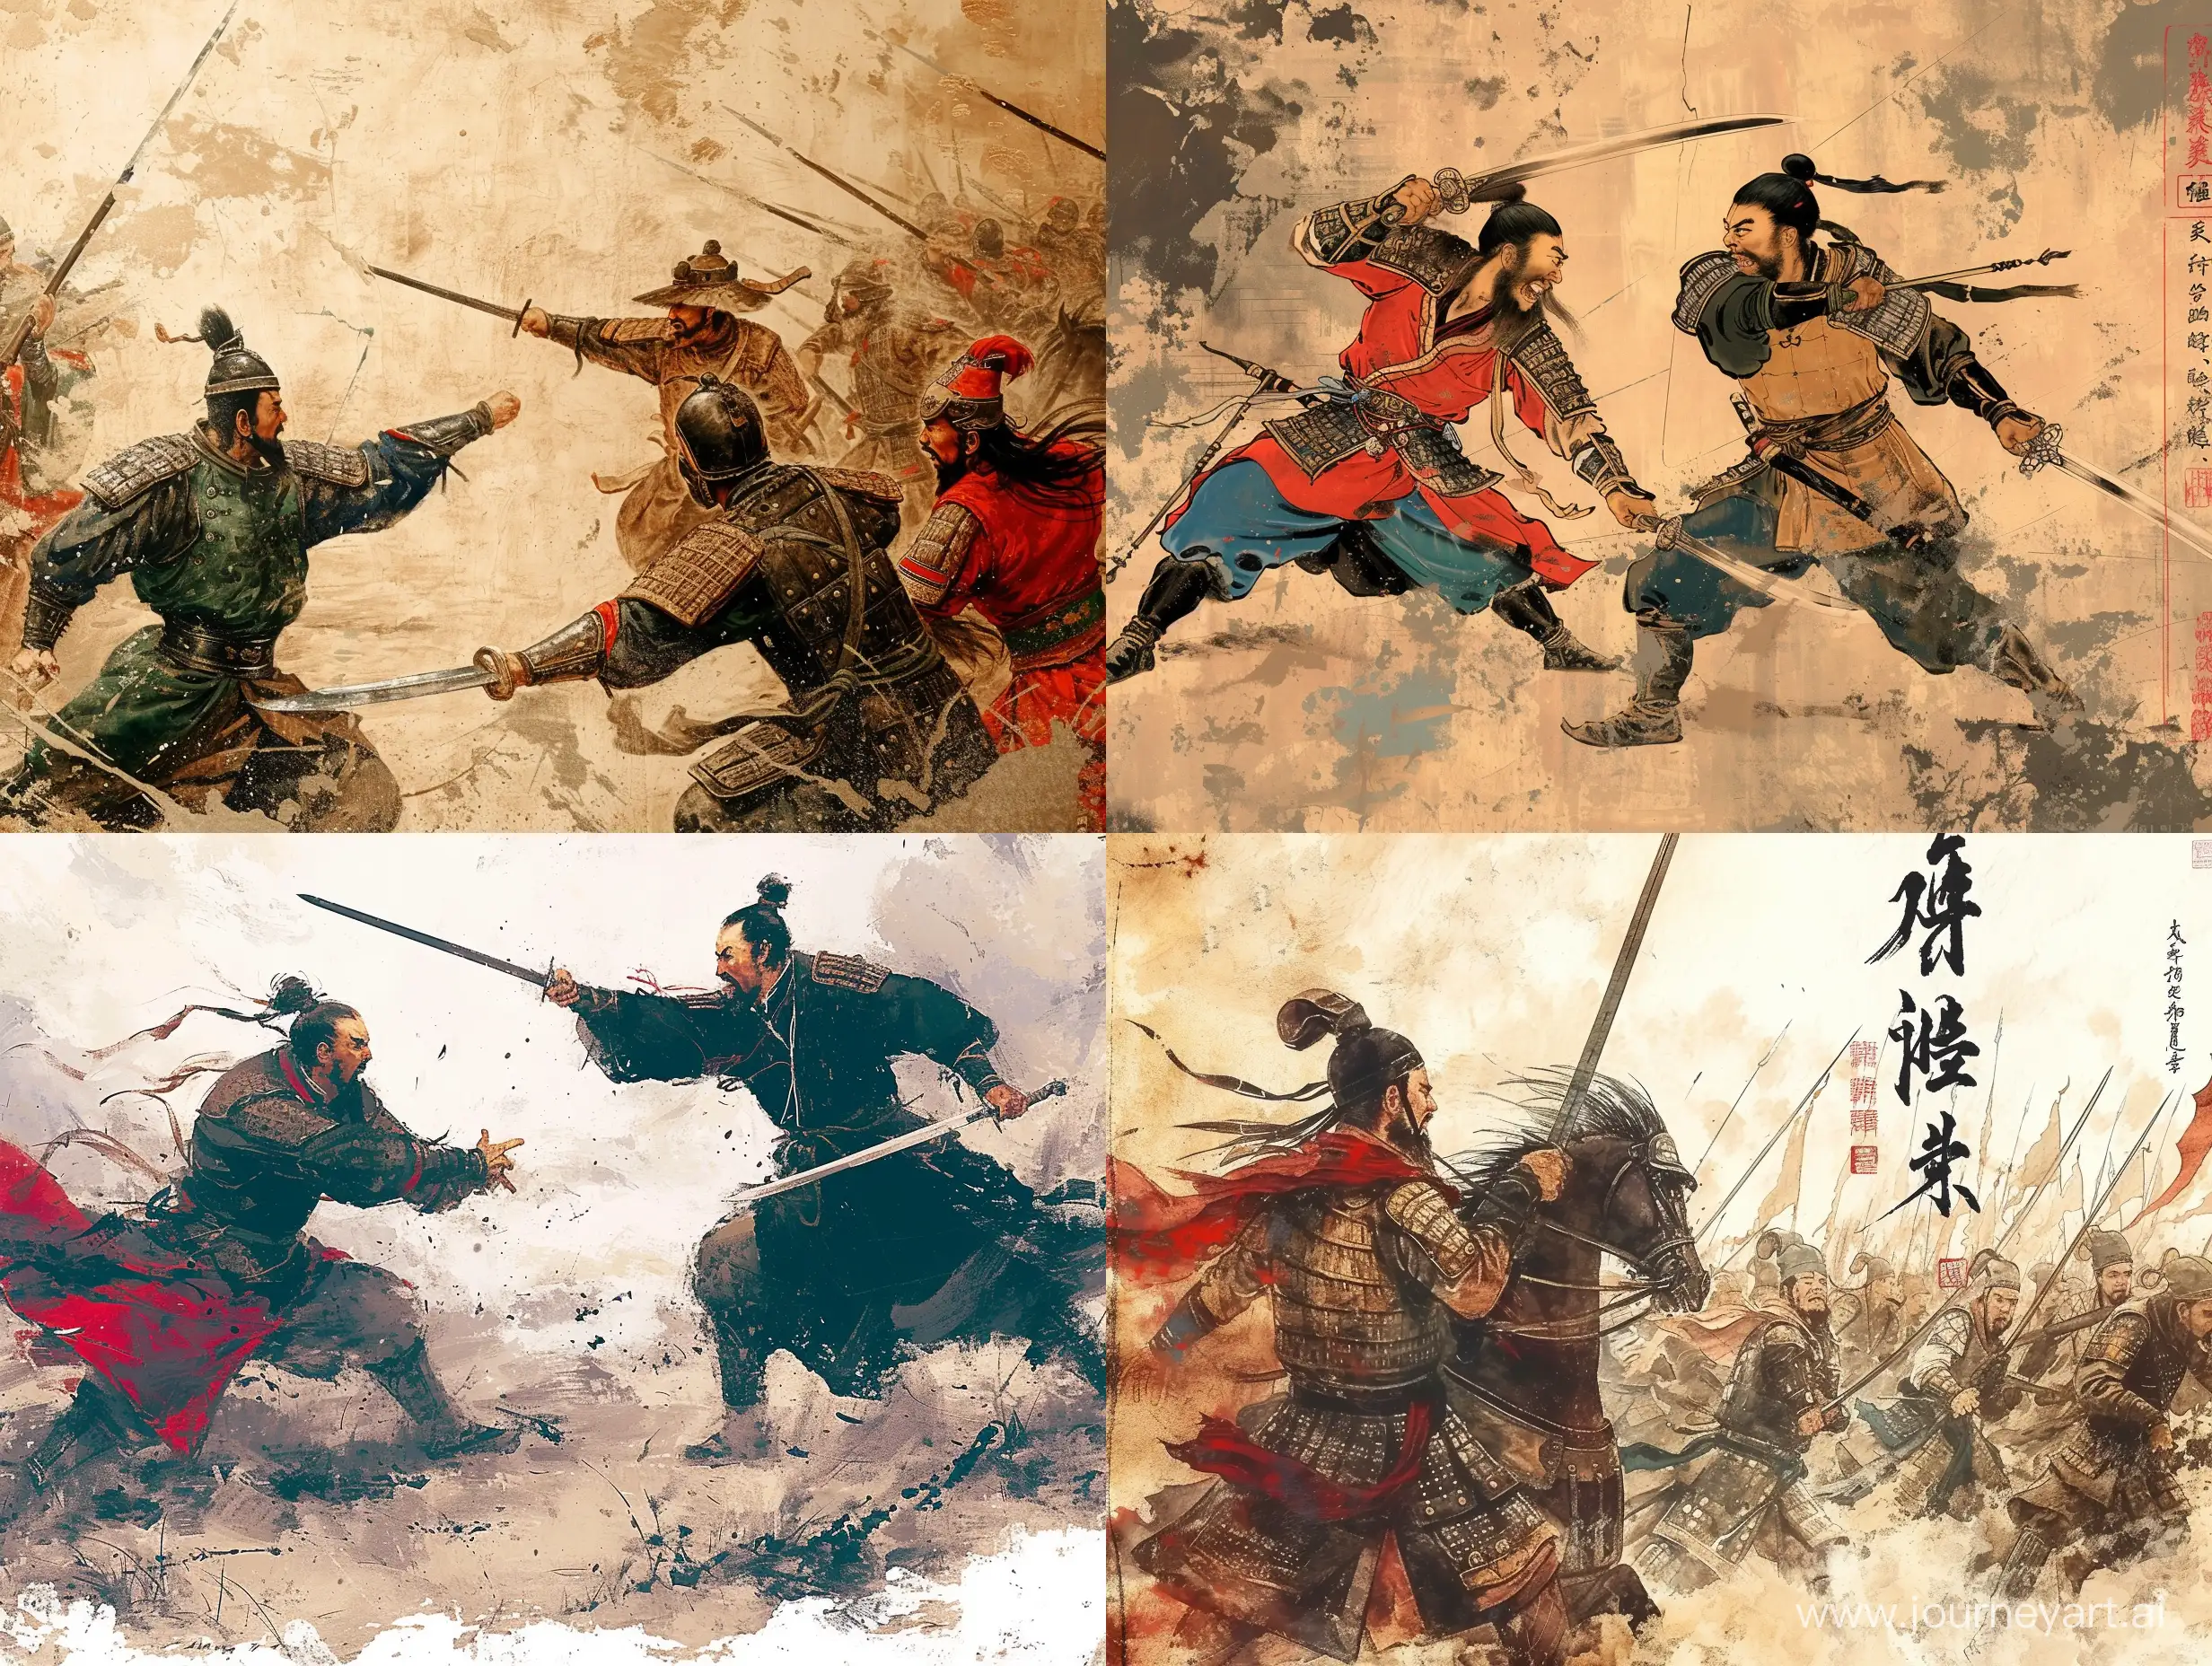 两国军队打仗，彩色水墨画风格，中国风，高清，大师之作，古代，东方美学。